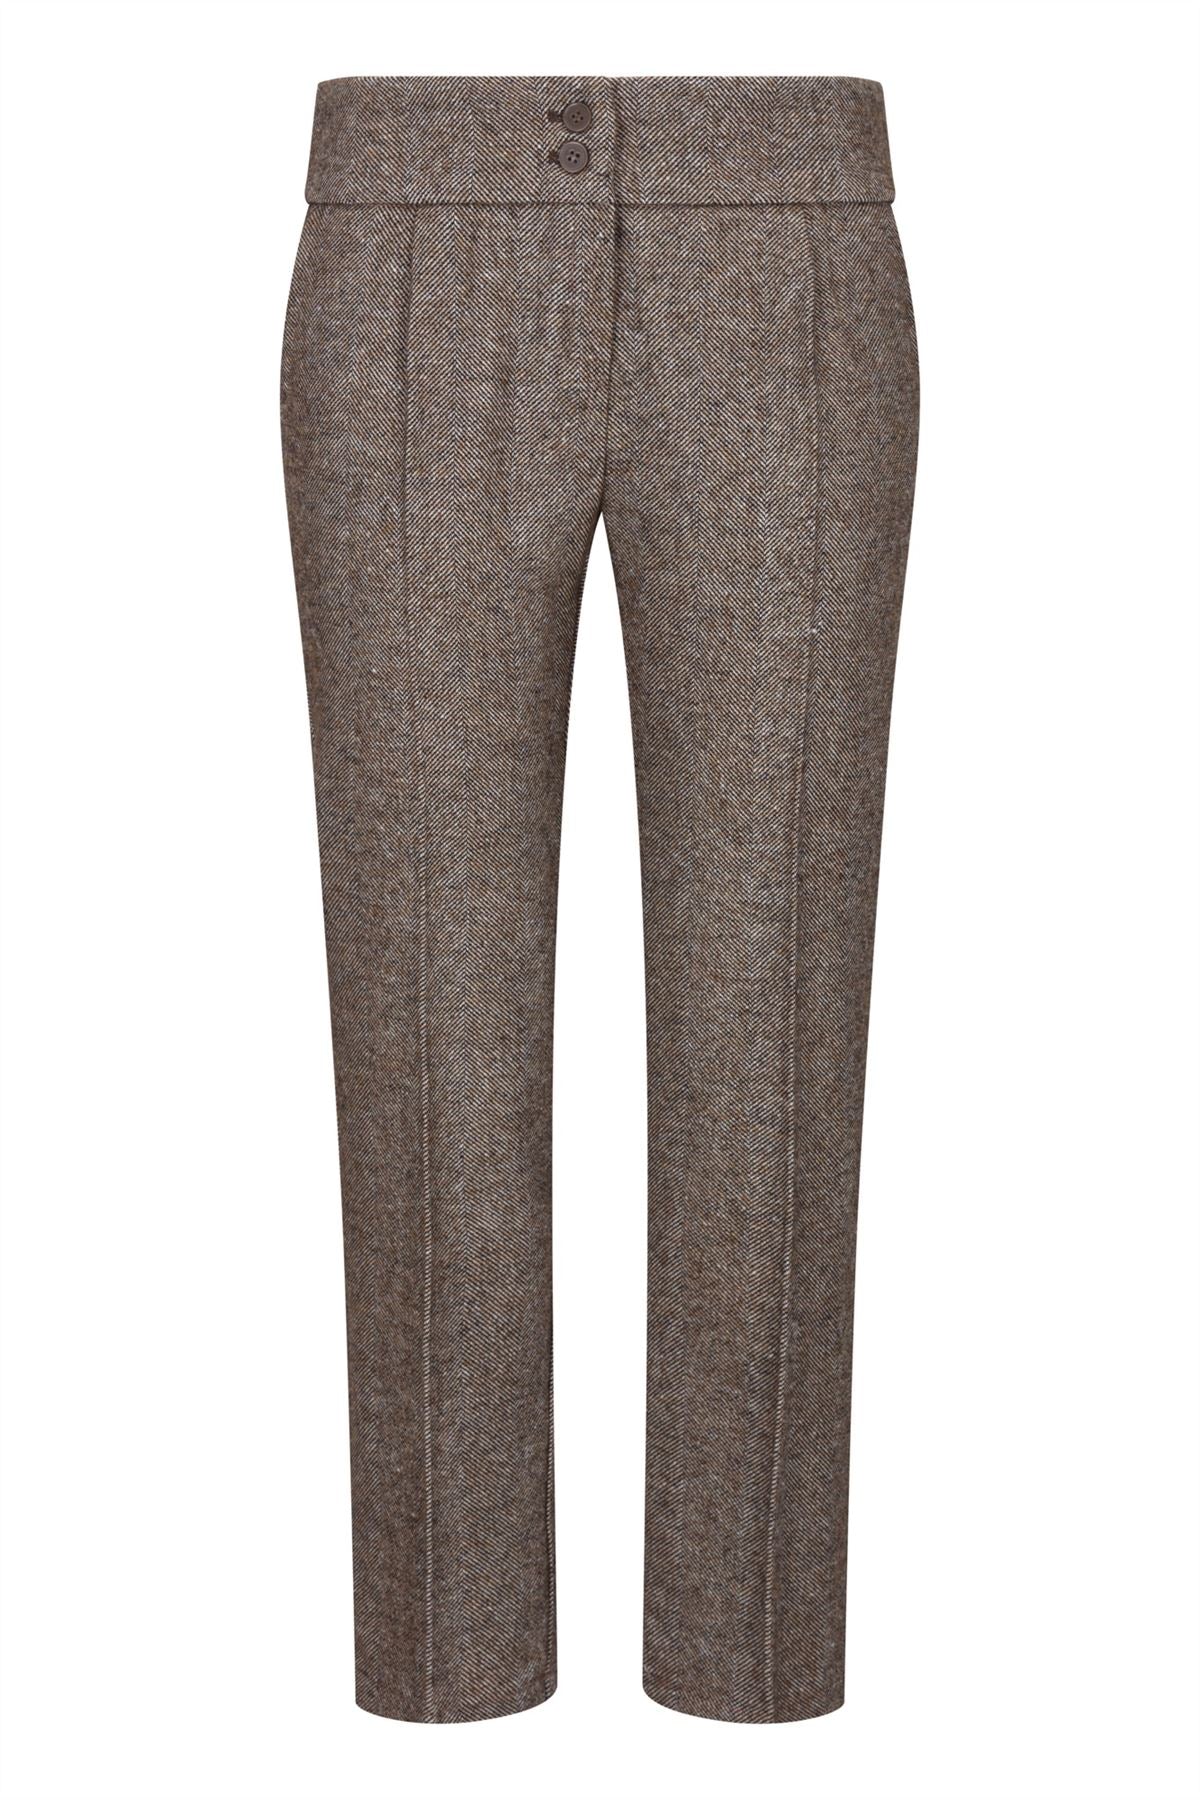 Womens Tweed Trousers 1920s Vintage Blinders Tan Brown Herringbone Tailored Fit